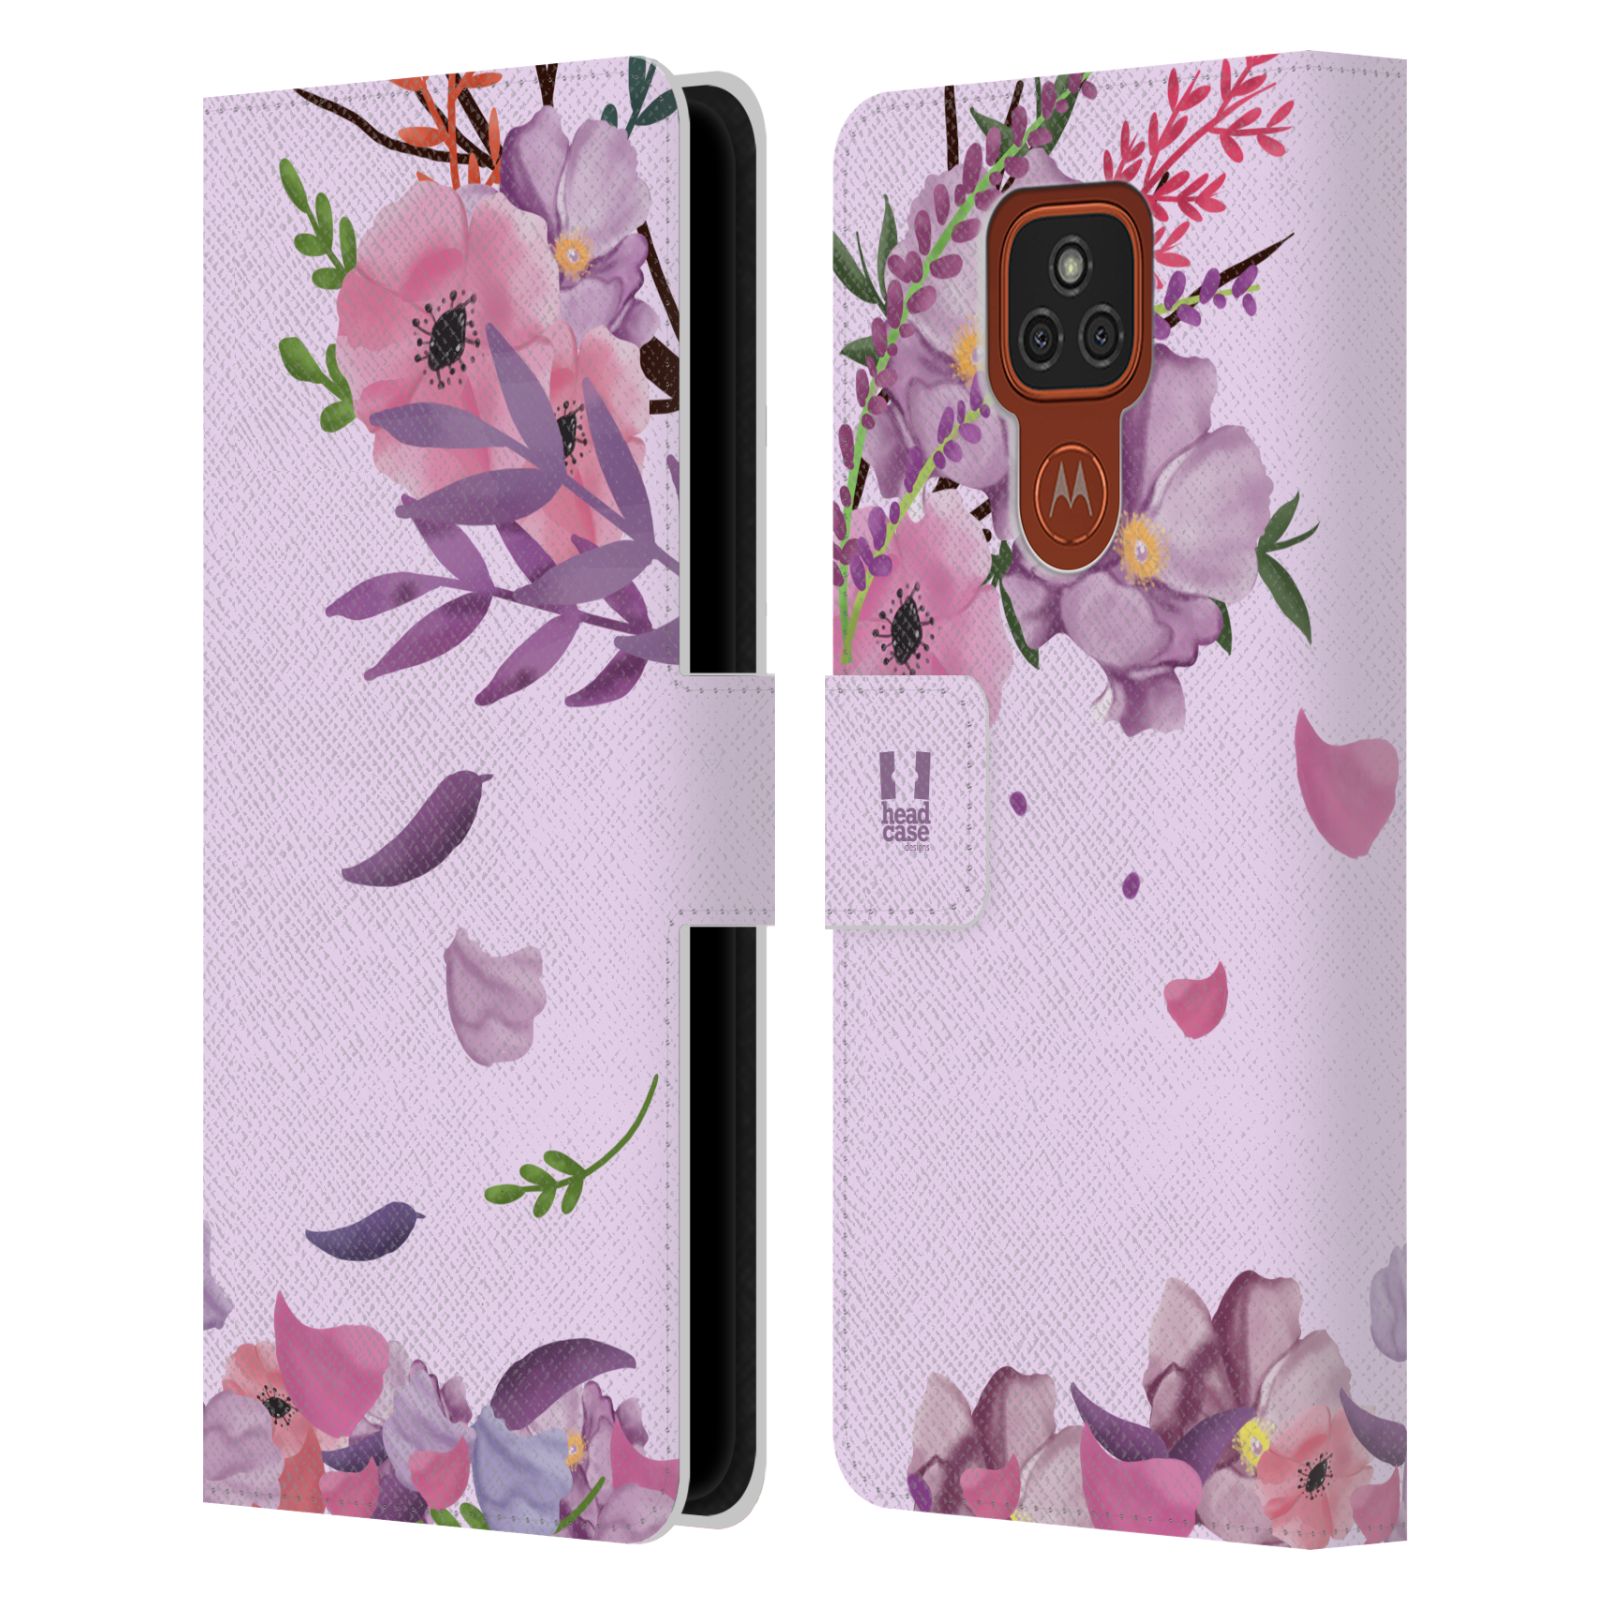 Pouzdro na mobil Motorola Moto E7 Plus - HEAD CASE - Rozkvetlé růže a listy růžová